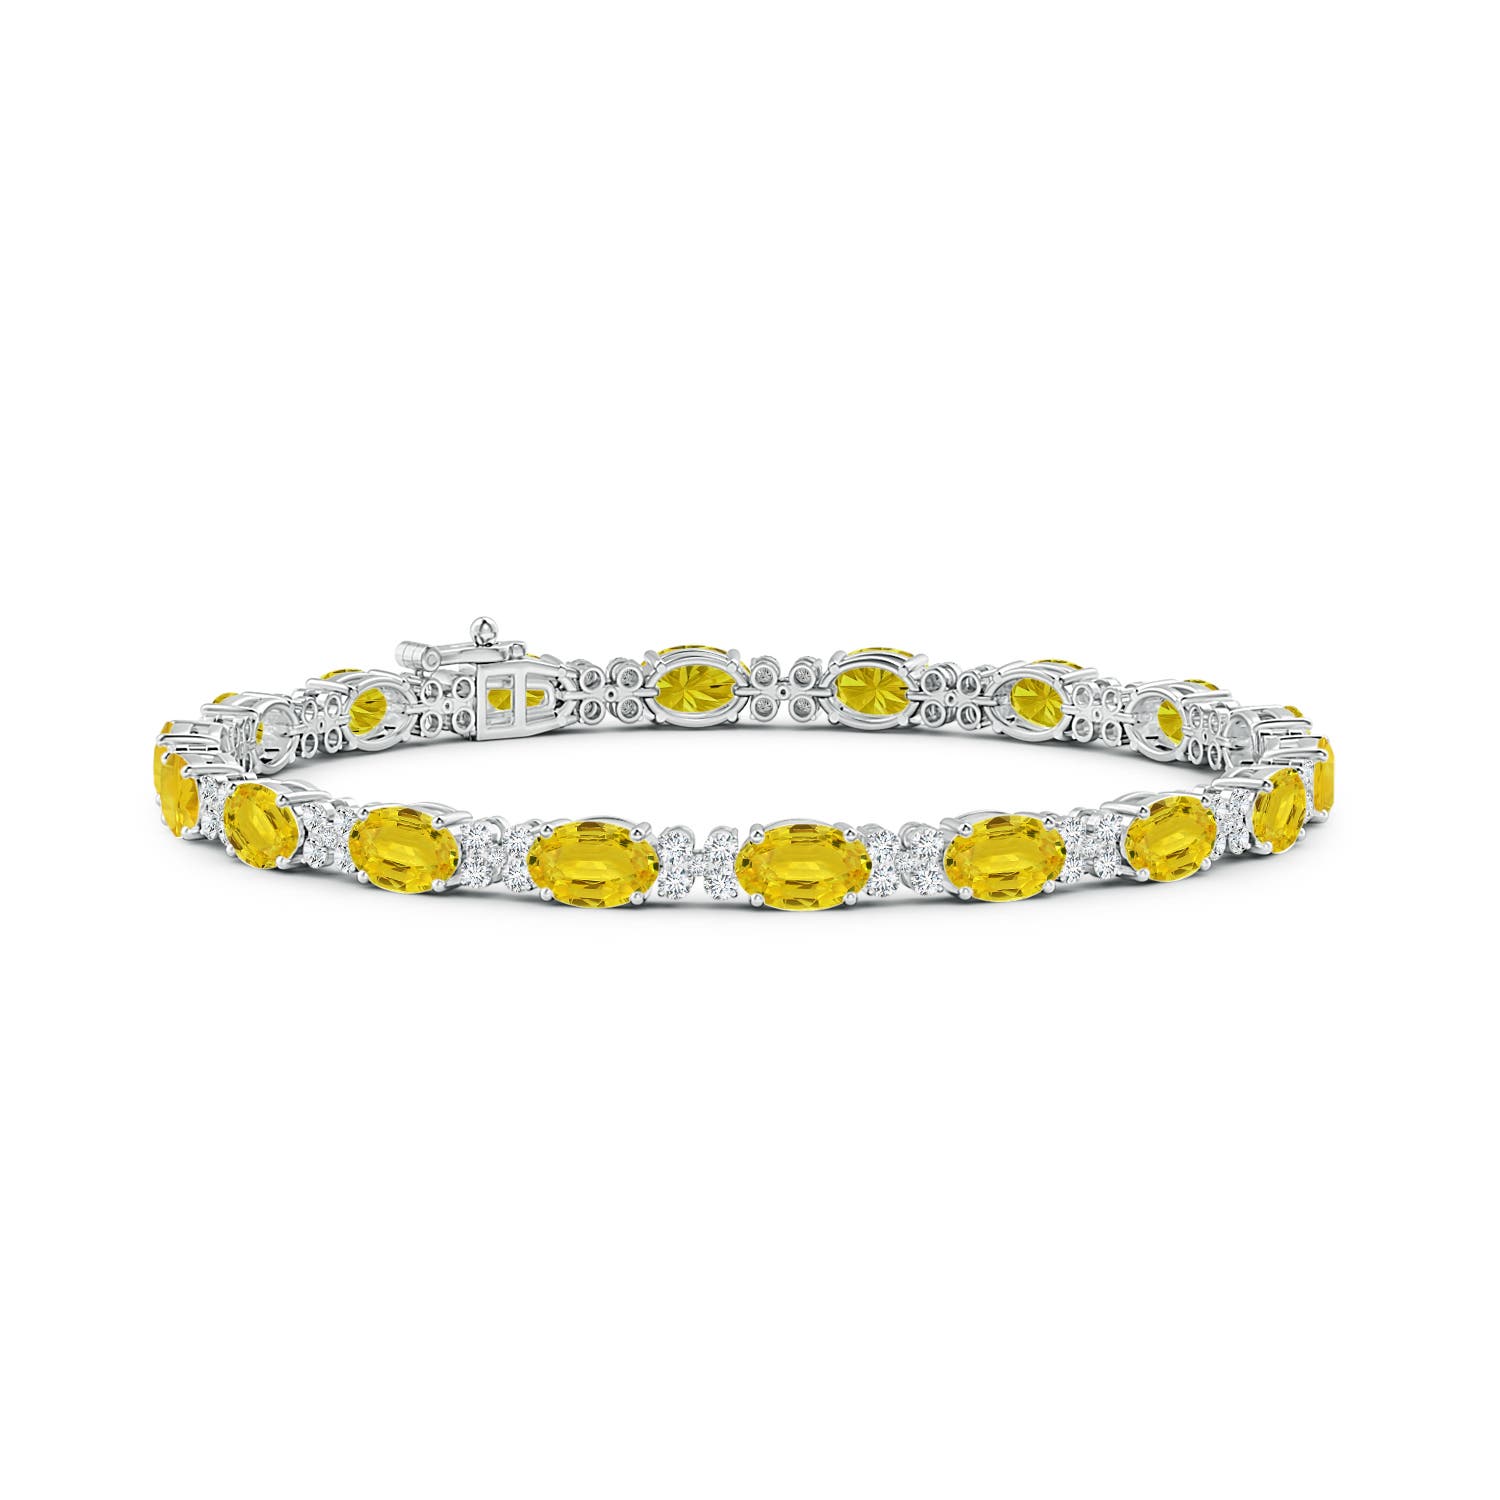 Natural Yellow Sapphire Bracelet, 925 Sterling Silver, Tennis Bracelet,  September Birthstone, Sapphire Jewelry, Women Bracelet, Gift for Her - Etsy